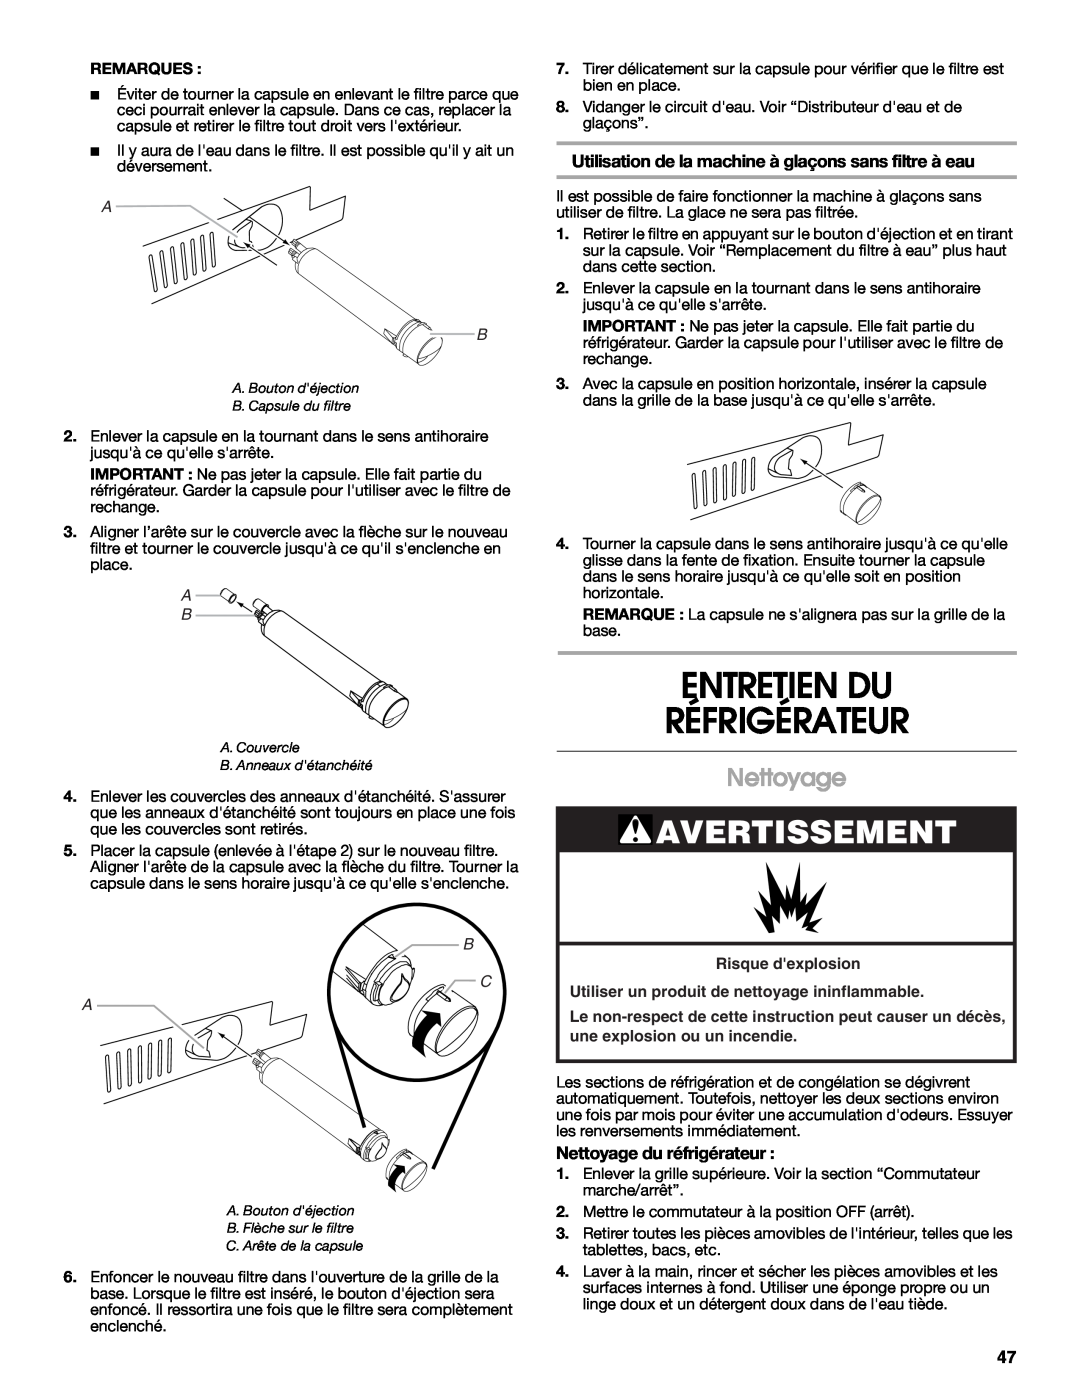 Jenn-Air W10303988A Entretien Du Réfrigérateur, Avertissement, Nettoyage du réfrigérateur, B C A, Risque dexplosion 